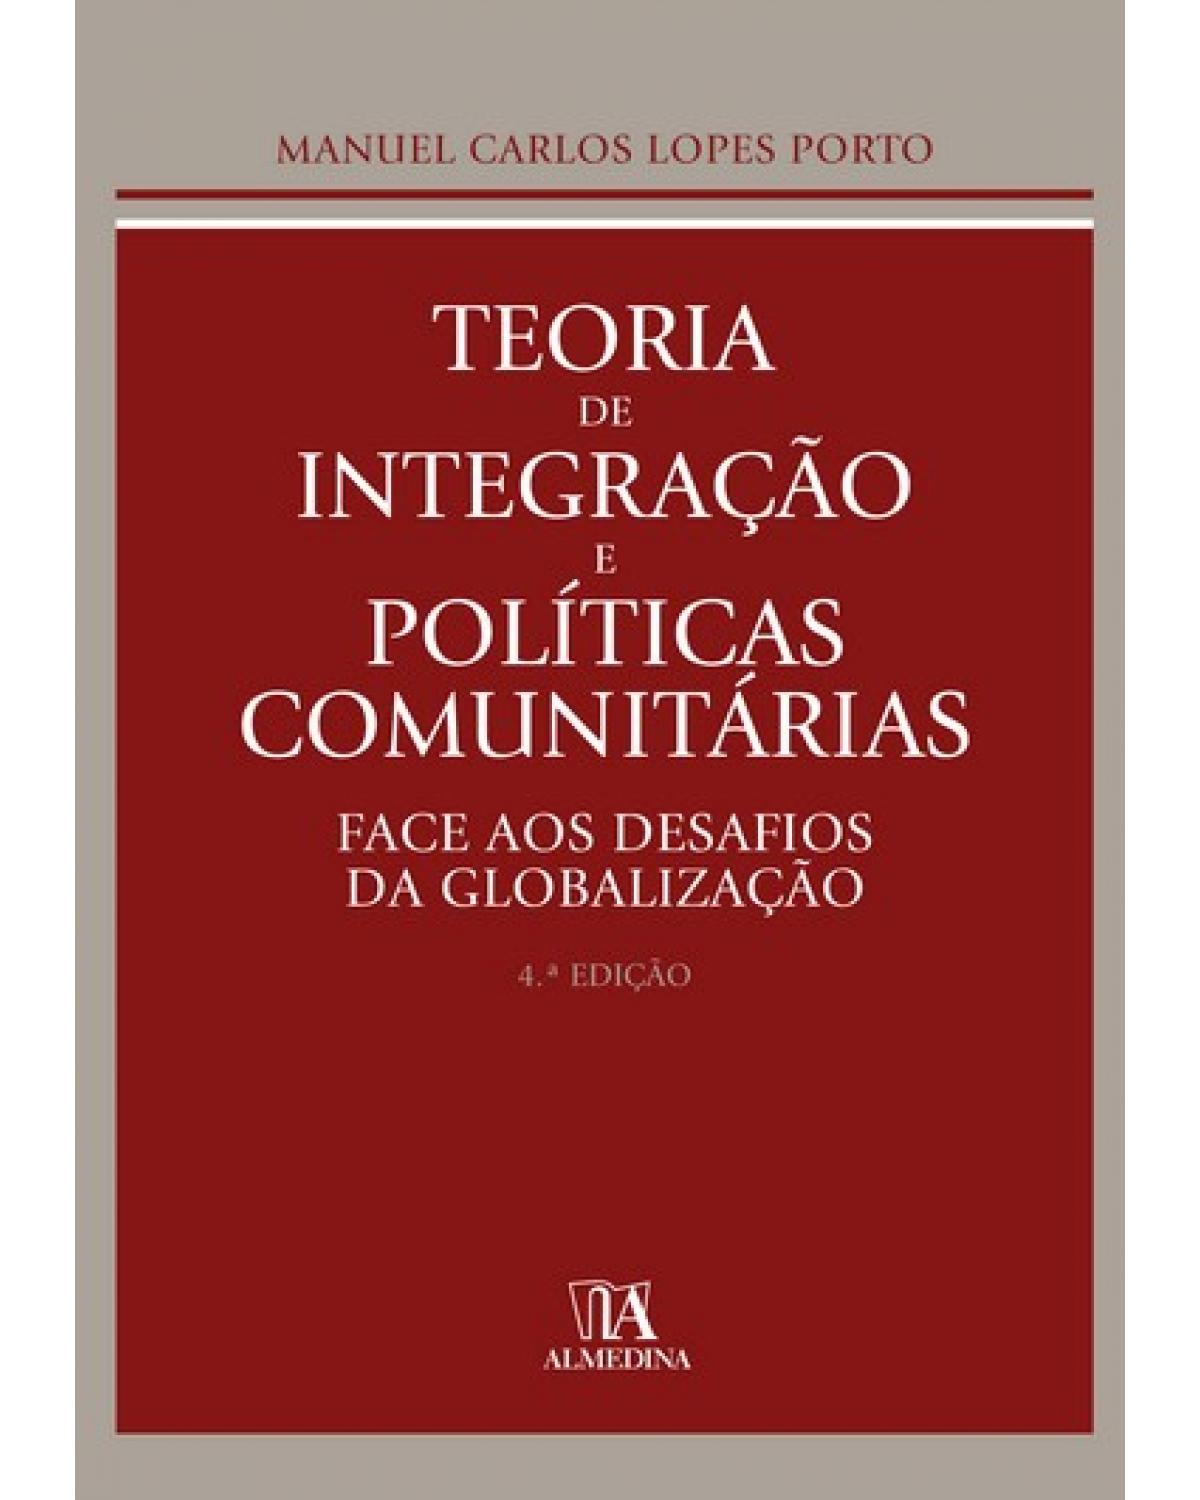 Teoria de integração e políticas comunitárias - face aos desafios da globalização - 4ª Edição | 2009